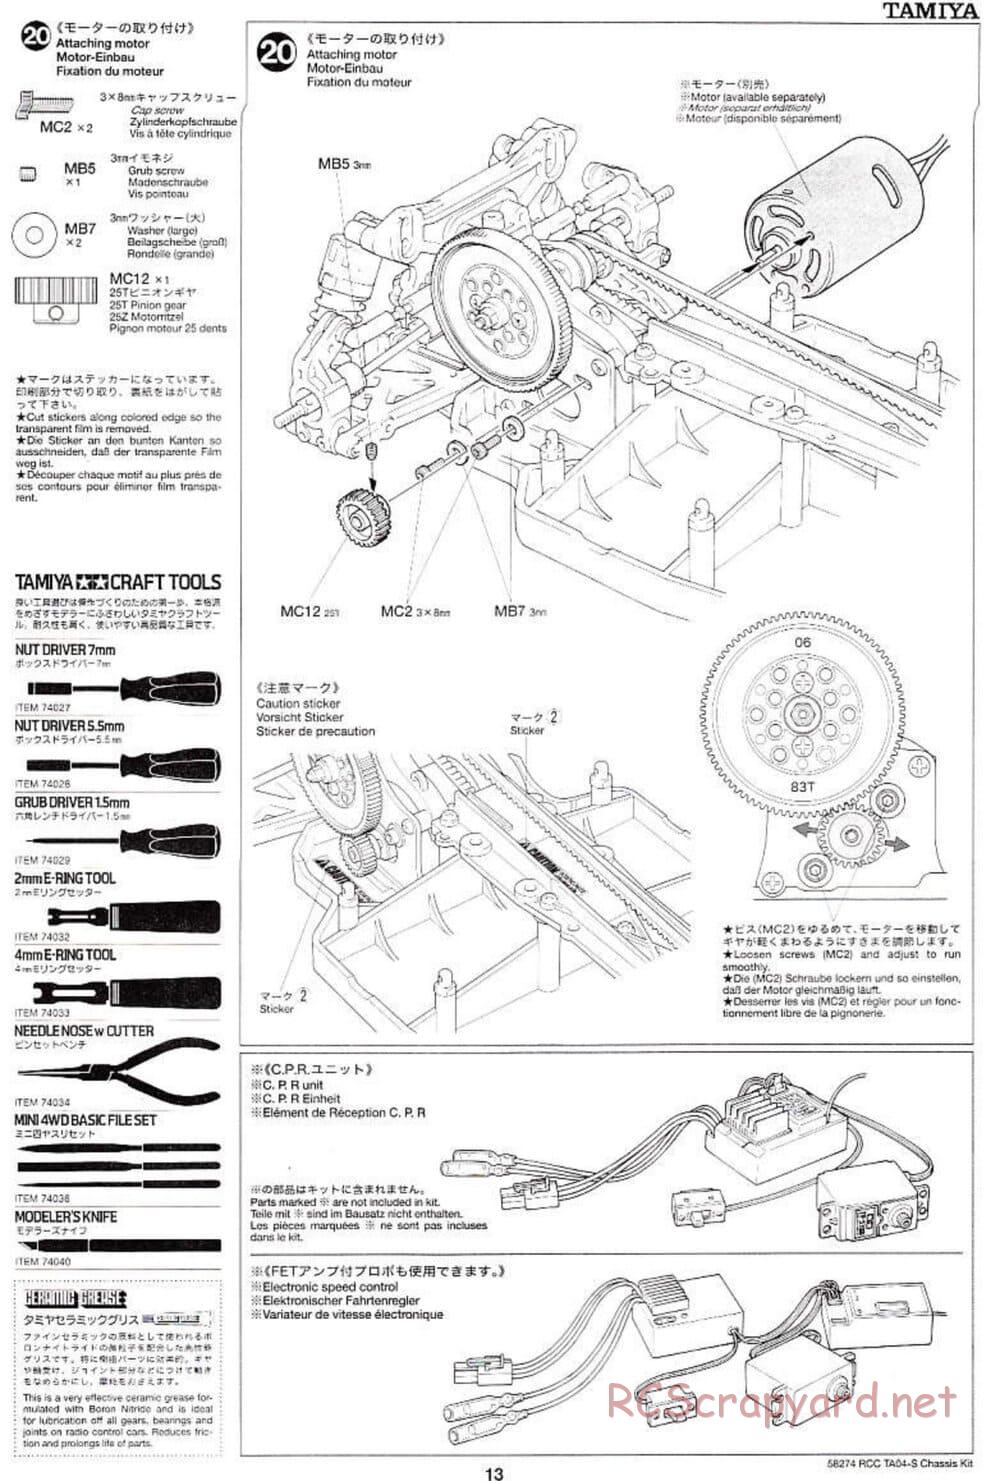 Tamiya - TA-04S Chassis - Manual - Page 13